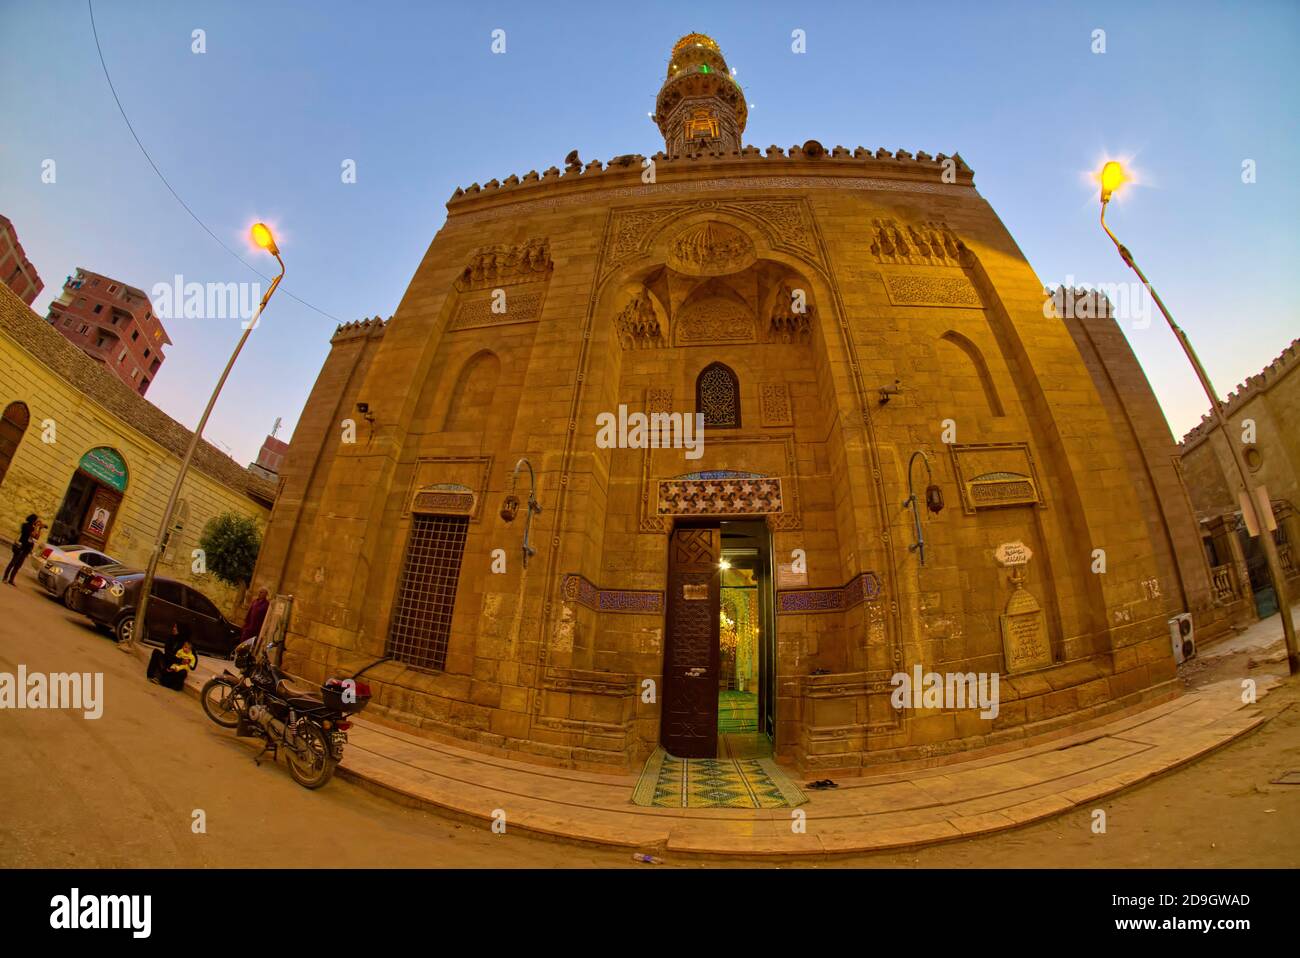 Le mausolée a été construit pour Muhammad ibn Idris ibn al-'Abbas ibn 'Uthman ibn Shafi'i, connu sous le nom d'Imam Shafi'i. Shafi'i est né à Gaza dans UN Banque D'Images